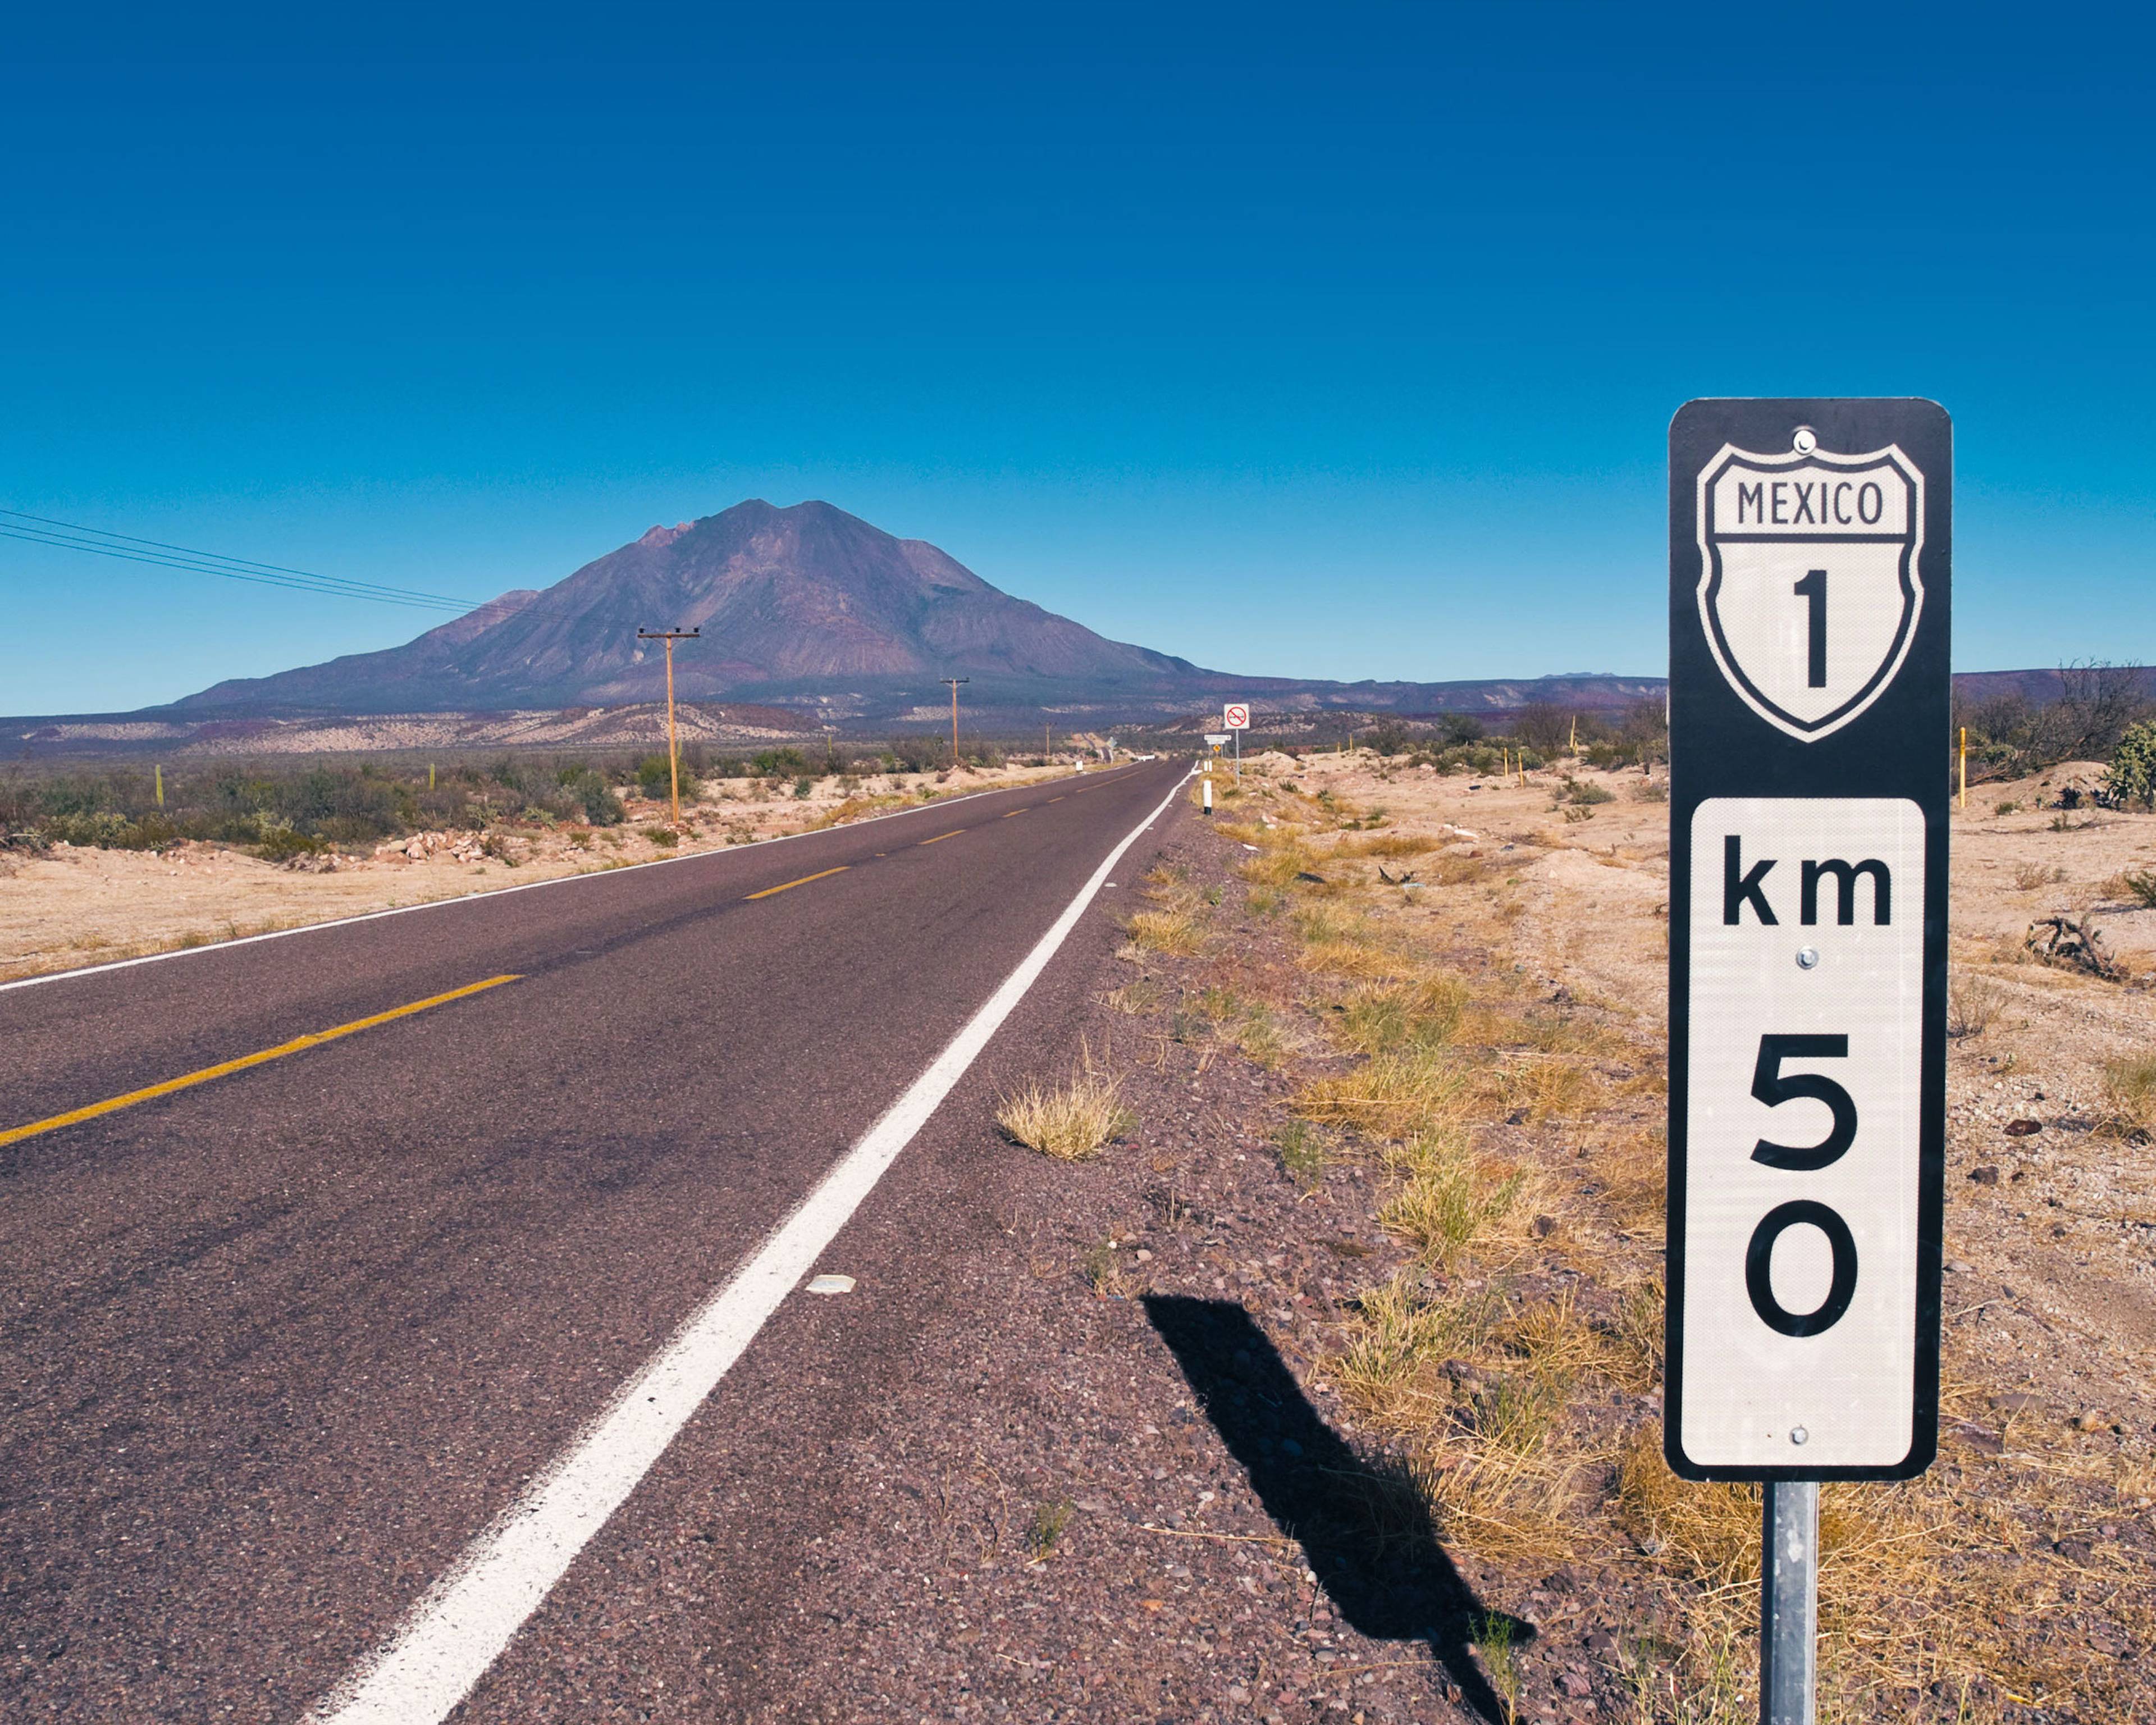 Messico on the road - viaggi e road trip 100% su misura